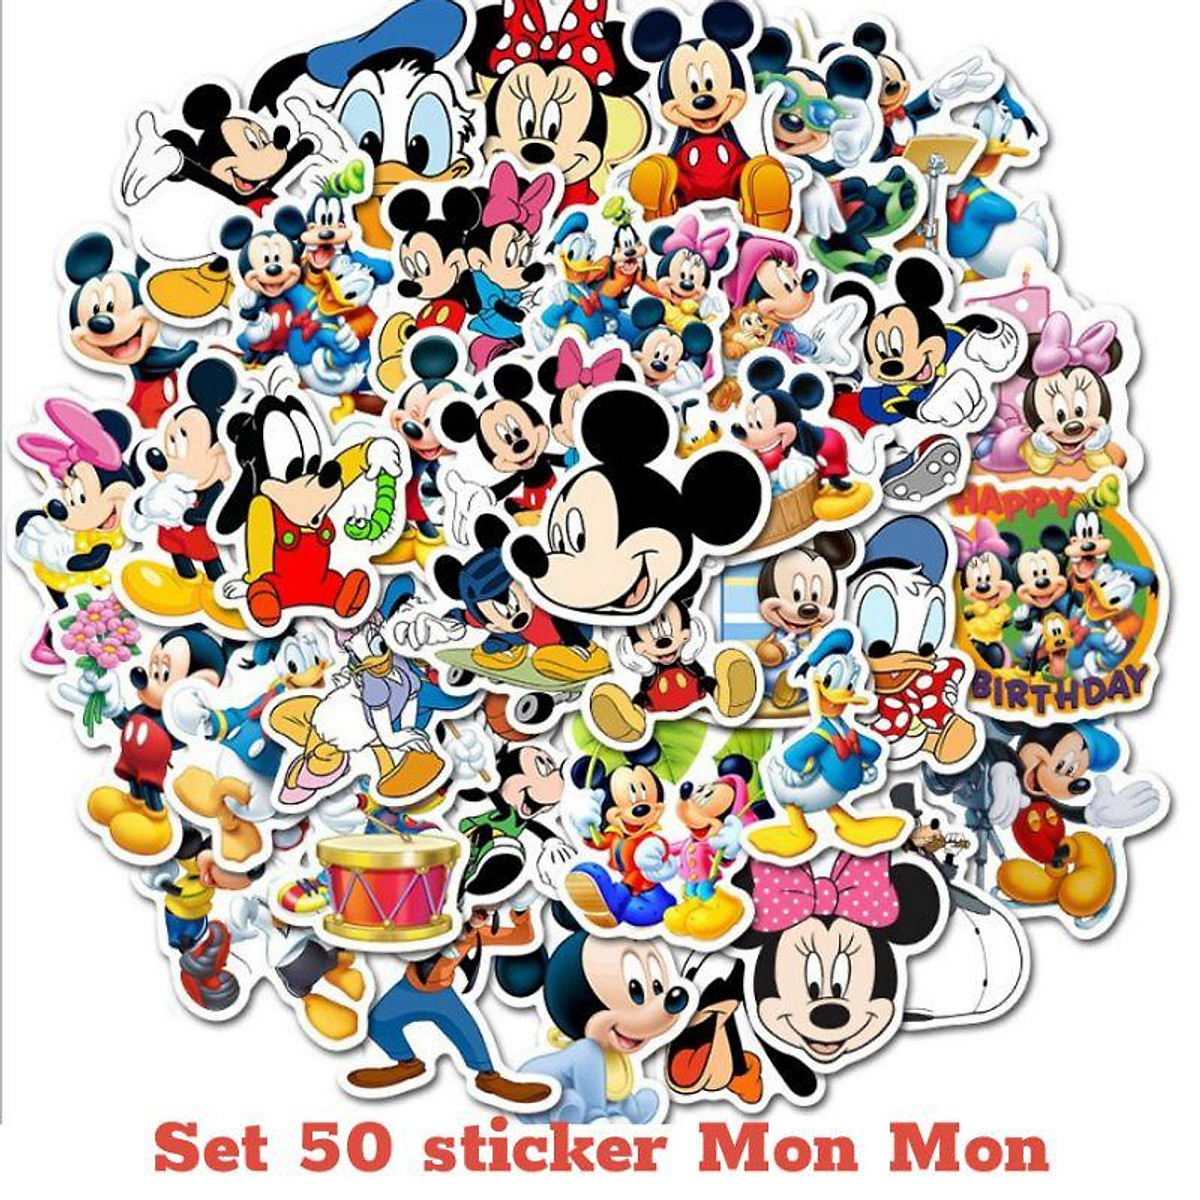 Set 50 sticker hình Mickey dễ thương chống thấm nước, bóc dán dễ dàng